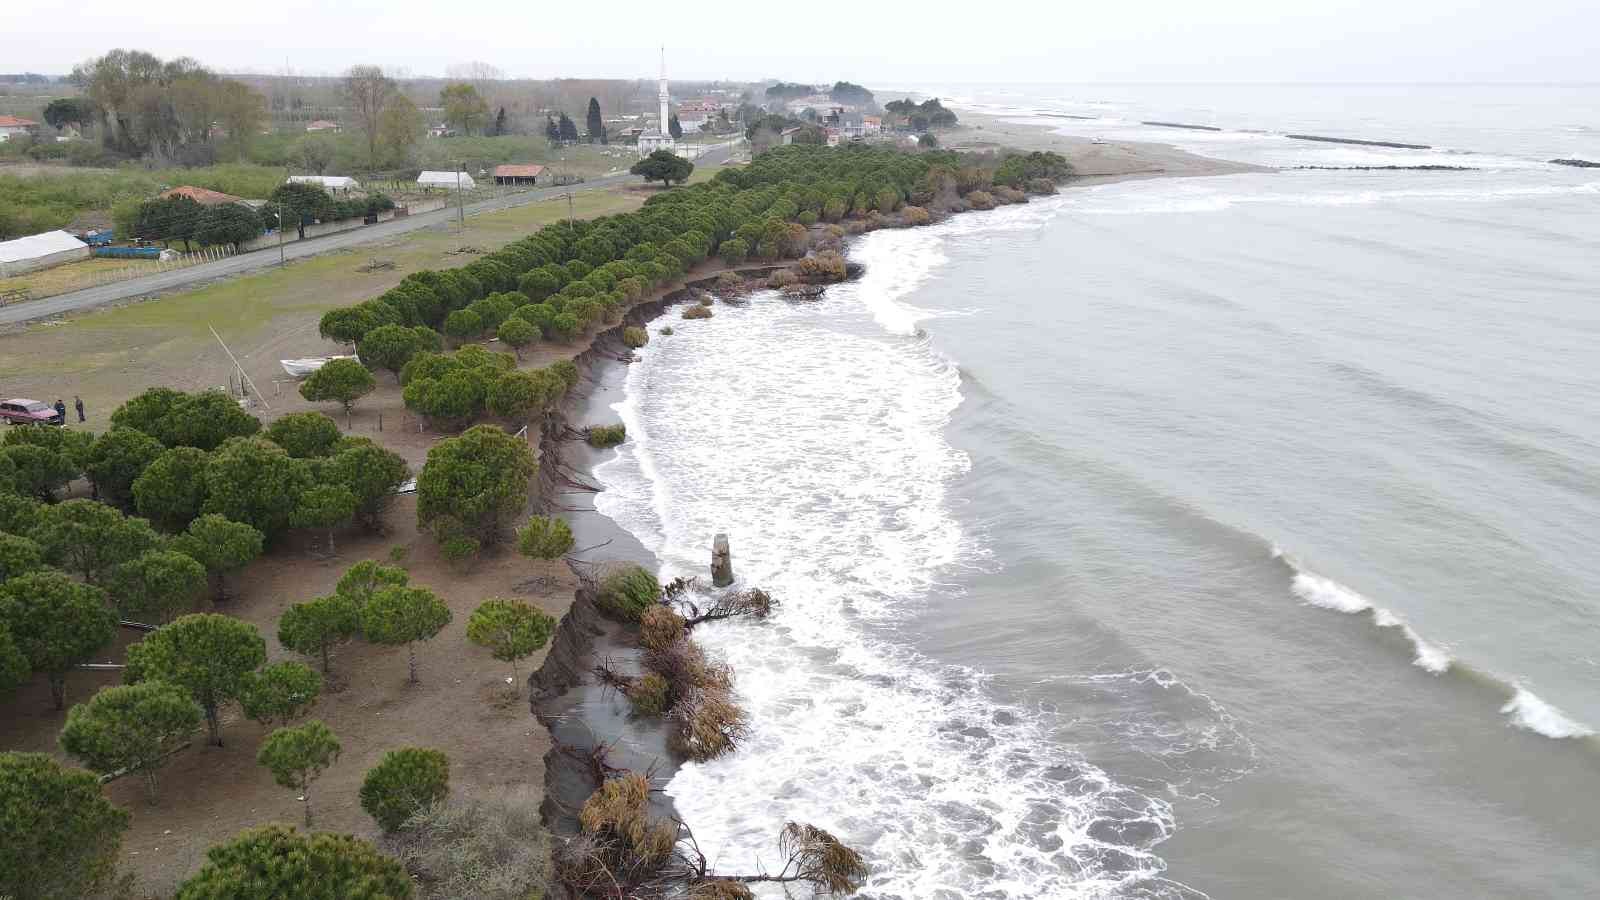 Hırçın dalgalar 150 metre kumsalı yuttu, evler tehdit altında
